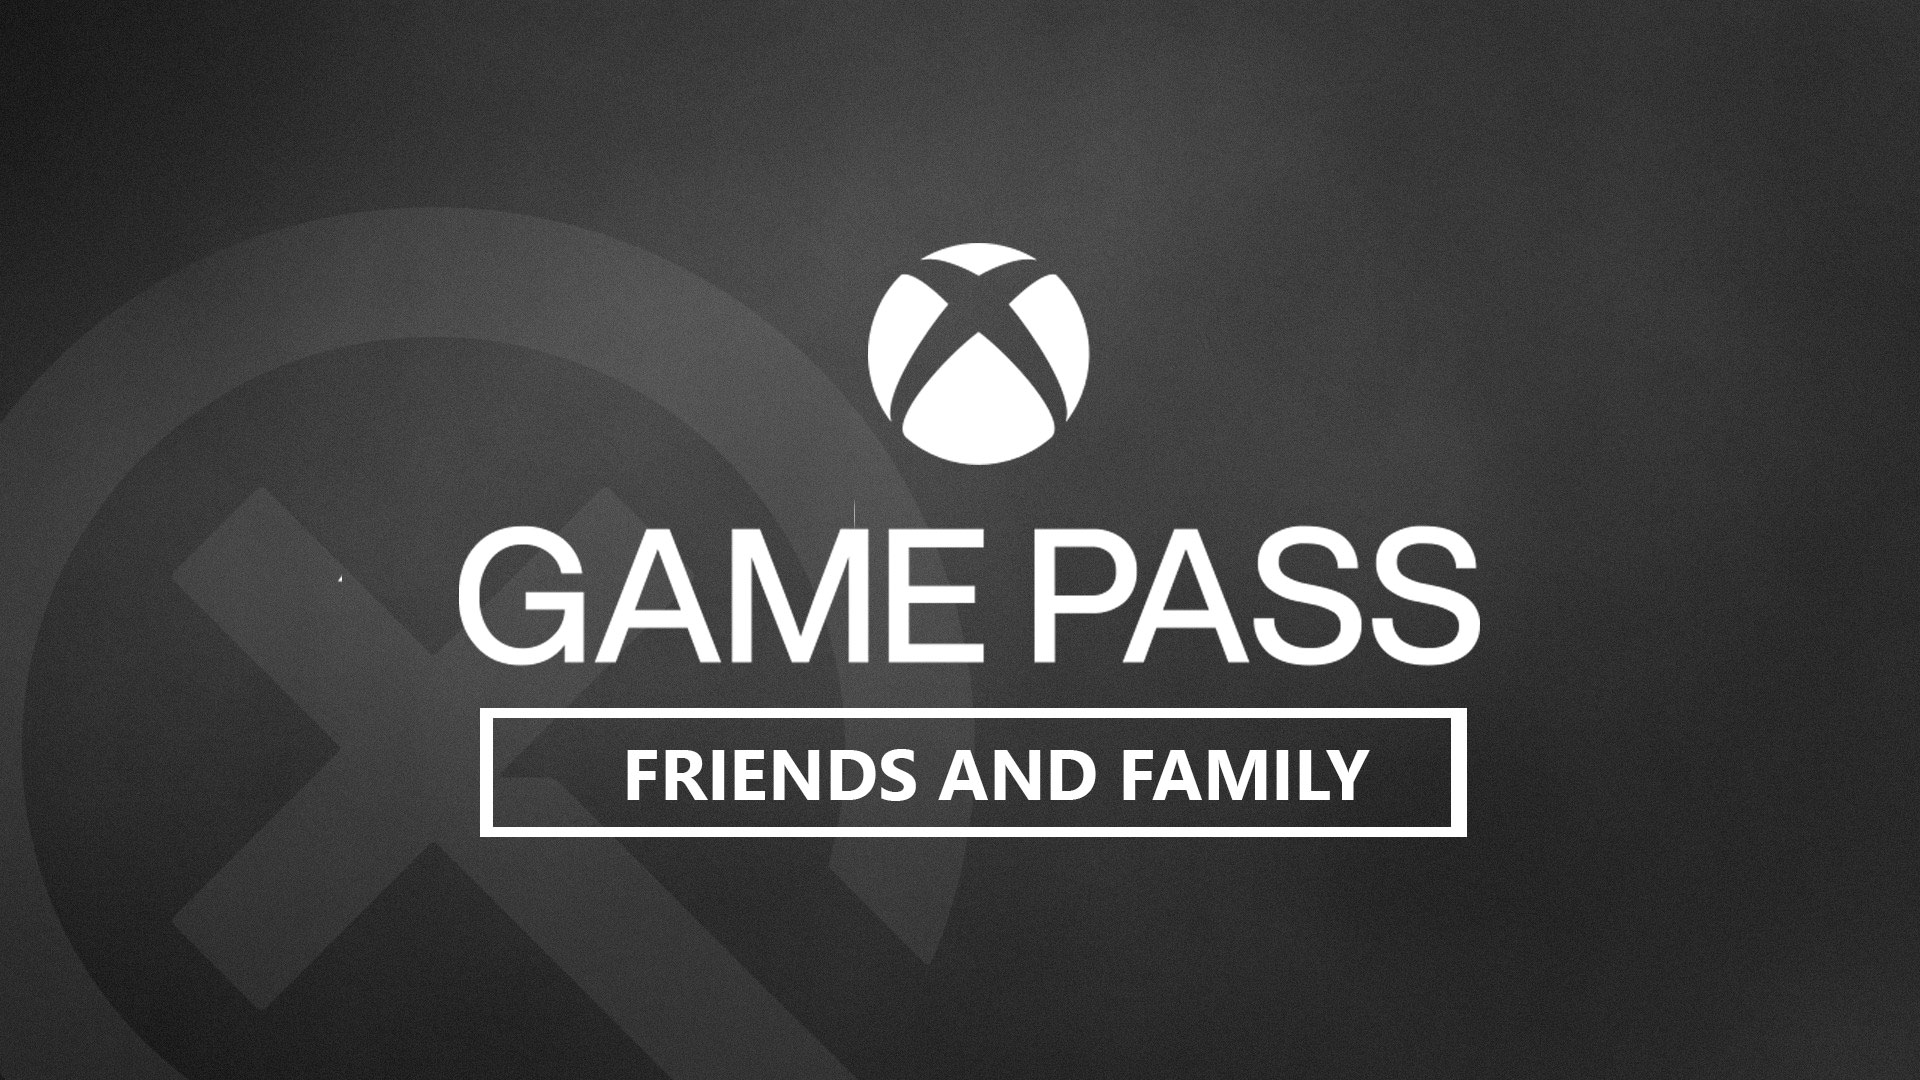 Comprar Xbox Game Pass Amigos y Familia — Xbox Game Pass -- Prueba- 1 mes